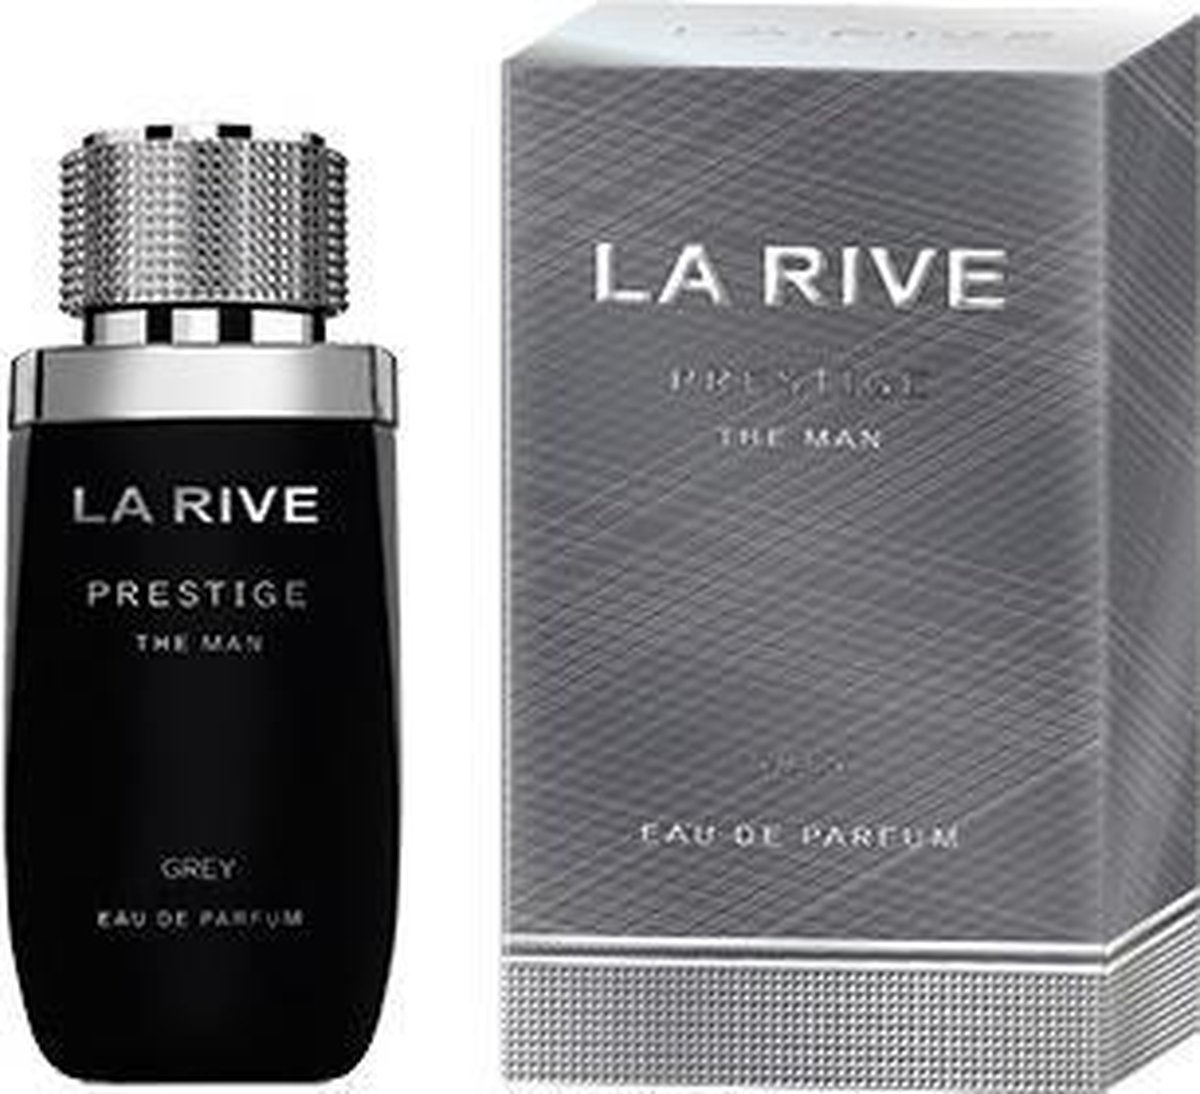 La Rive Prestige Grey The Men 75 ml - Eau De Parfum - Herenparfum | bol.com